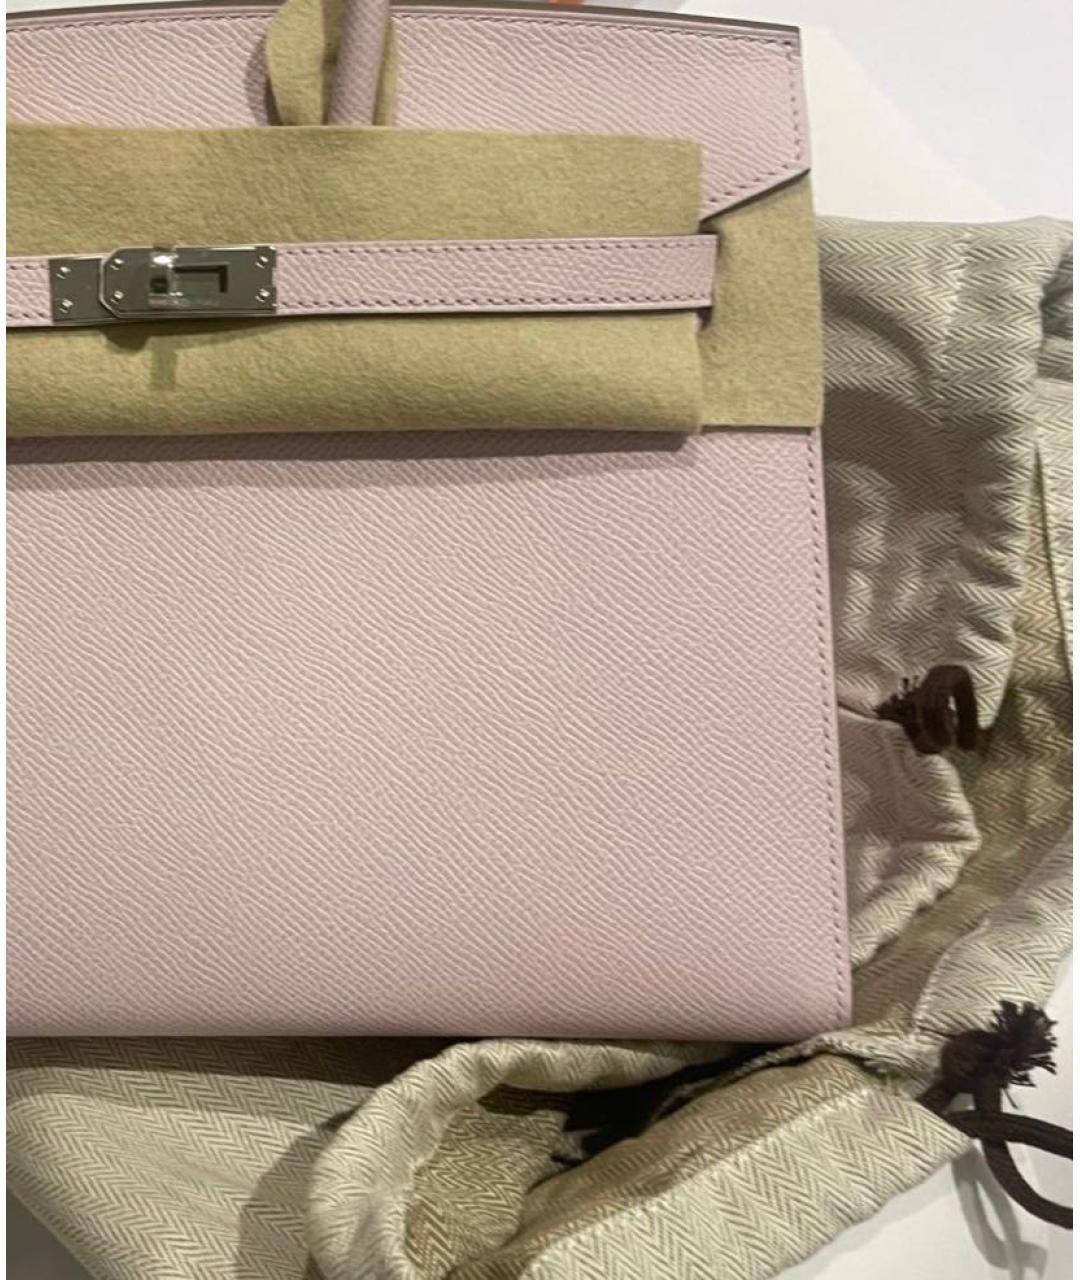 HERMES Розовая кожаная сумка с короткими ручками, фото 3